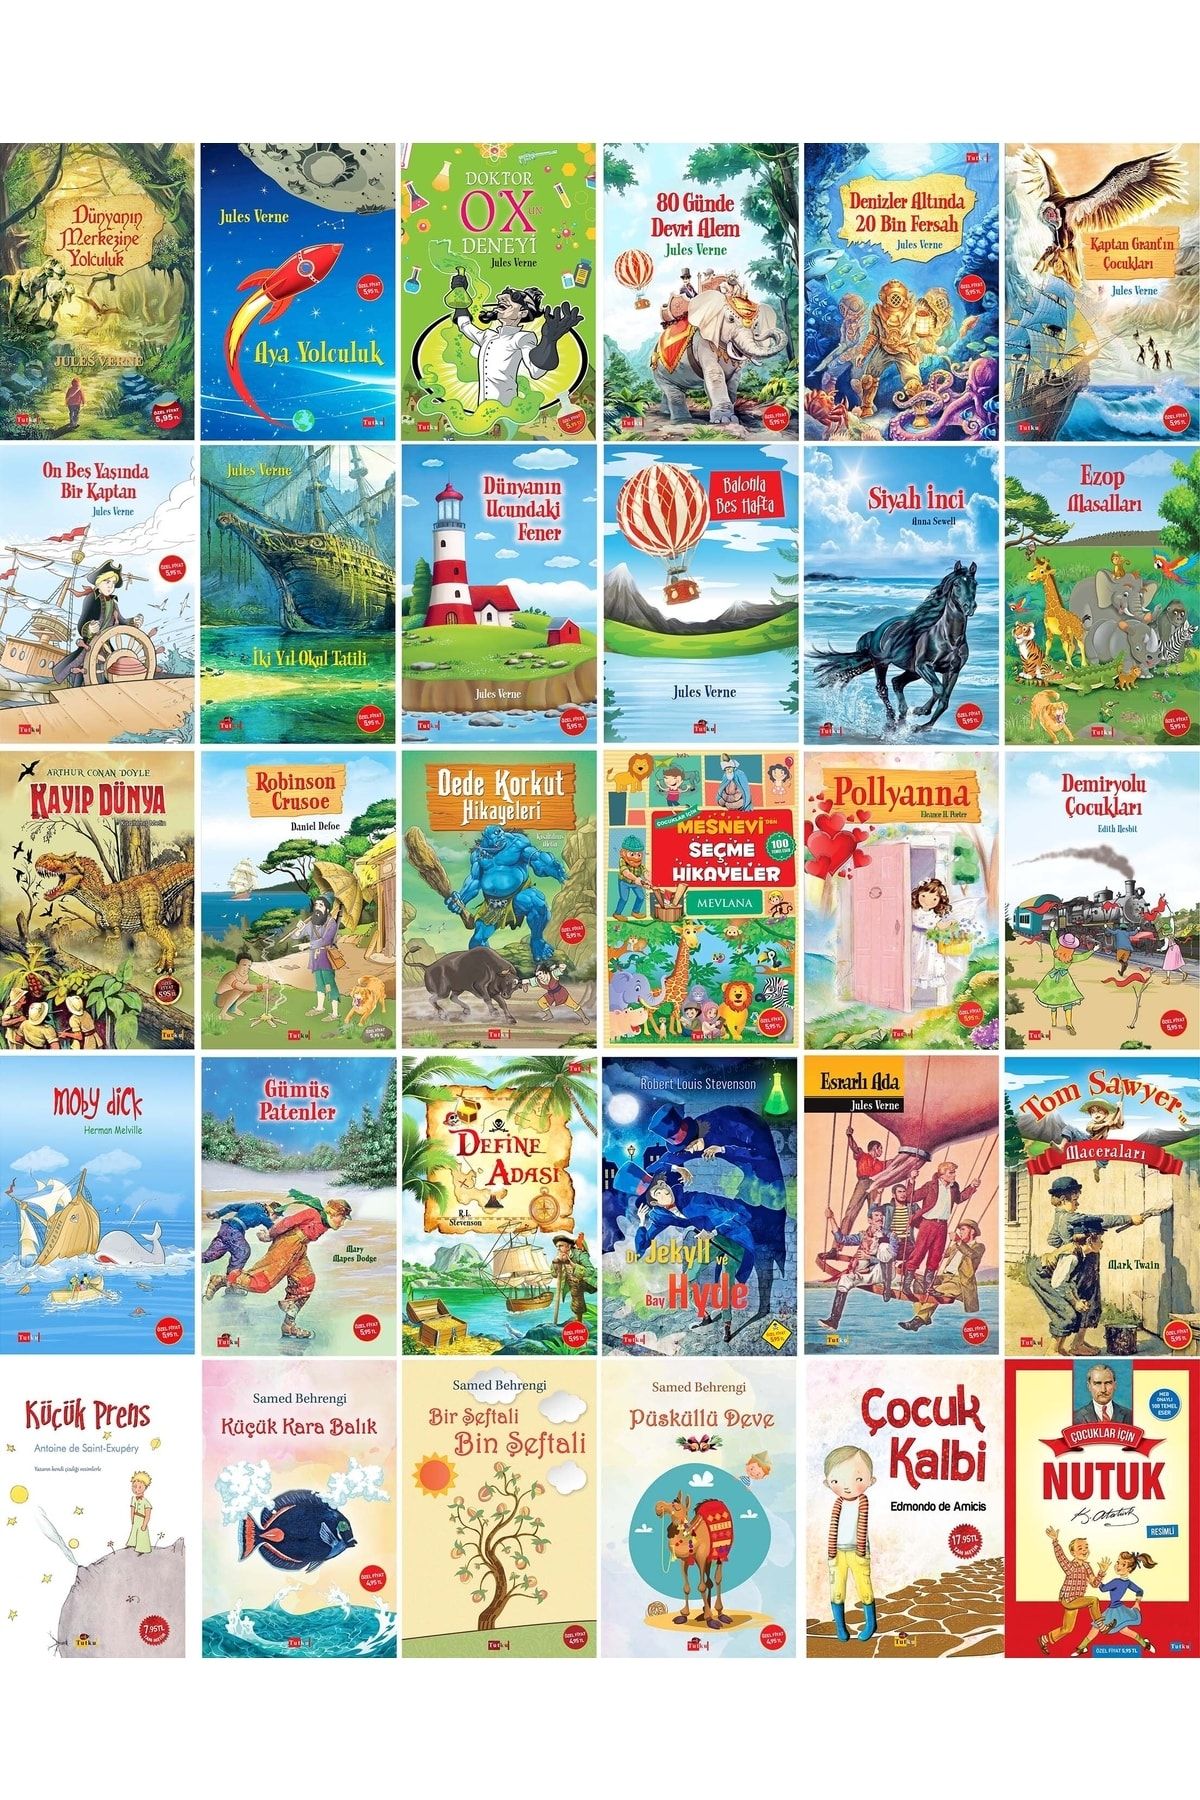 Tutku Yayınevi Çocuk Dünya Klasikleri Seti - 30 Kitap (resimli) - Jules Verne, Kara Balık, Küçük Prens